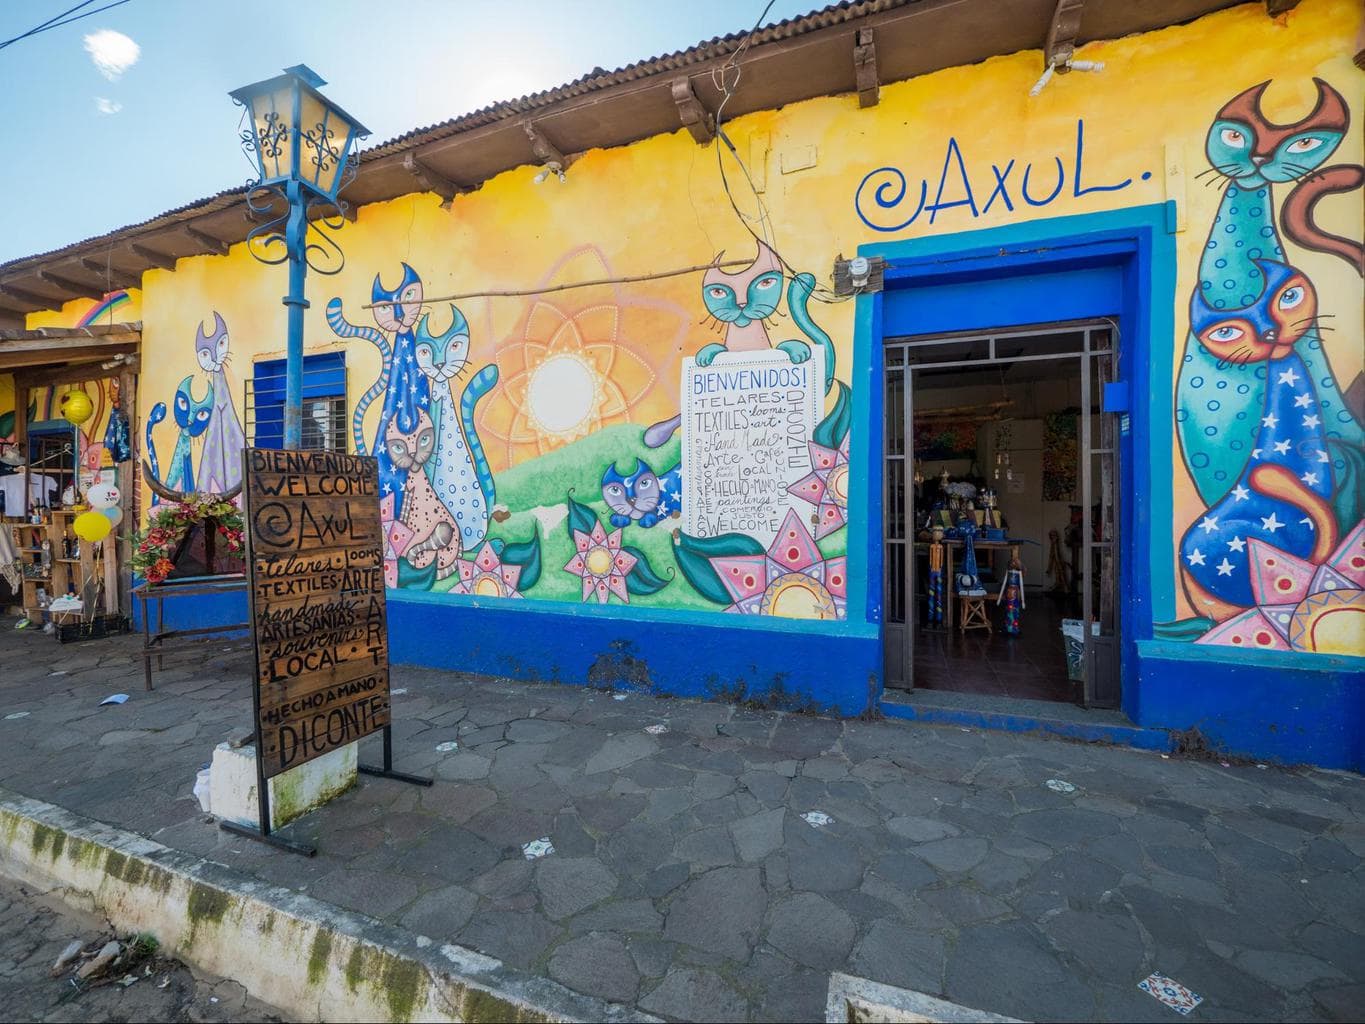 Axul in El Salvador